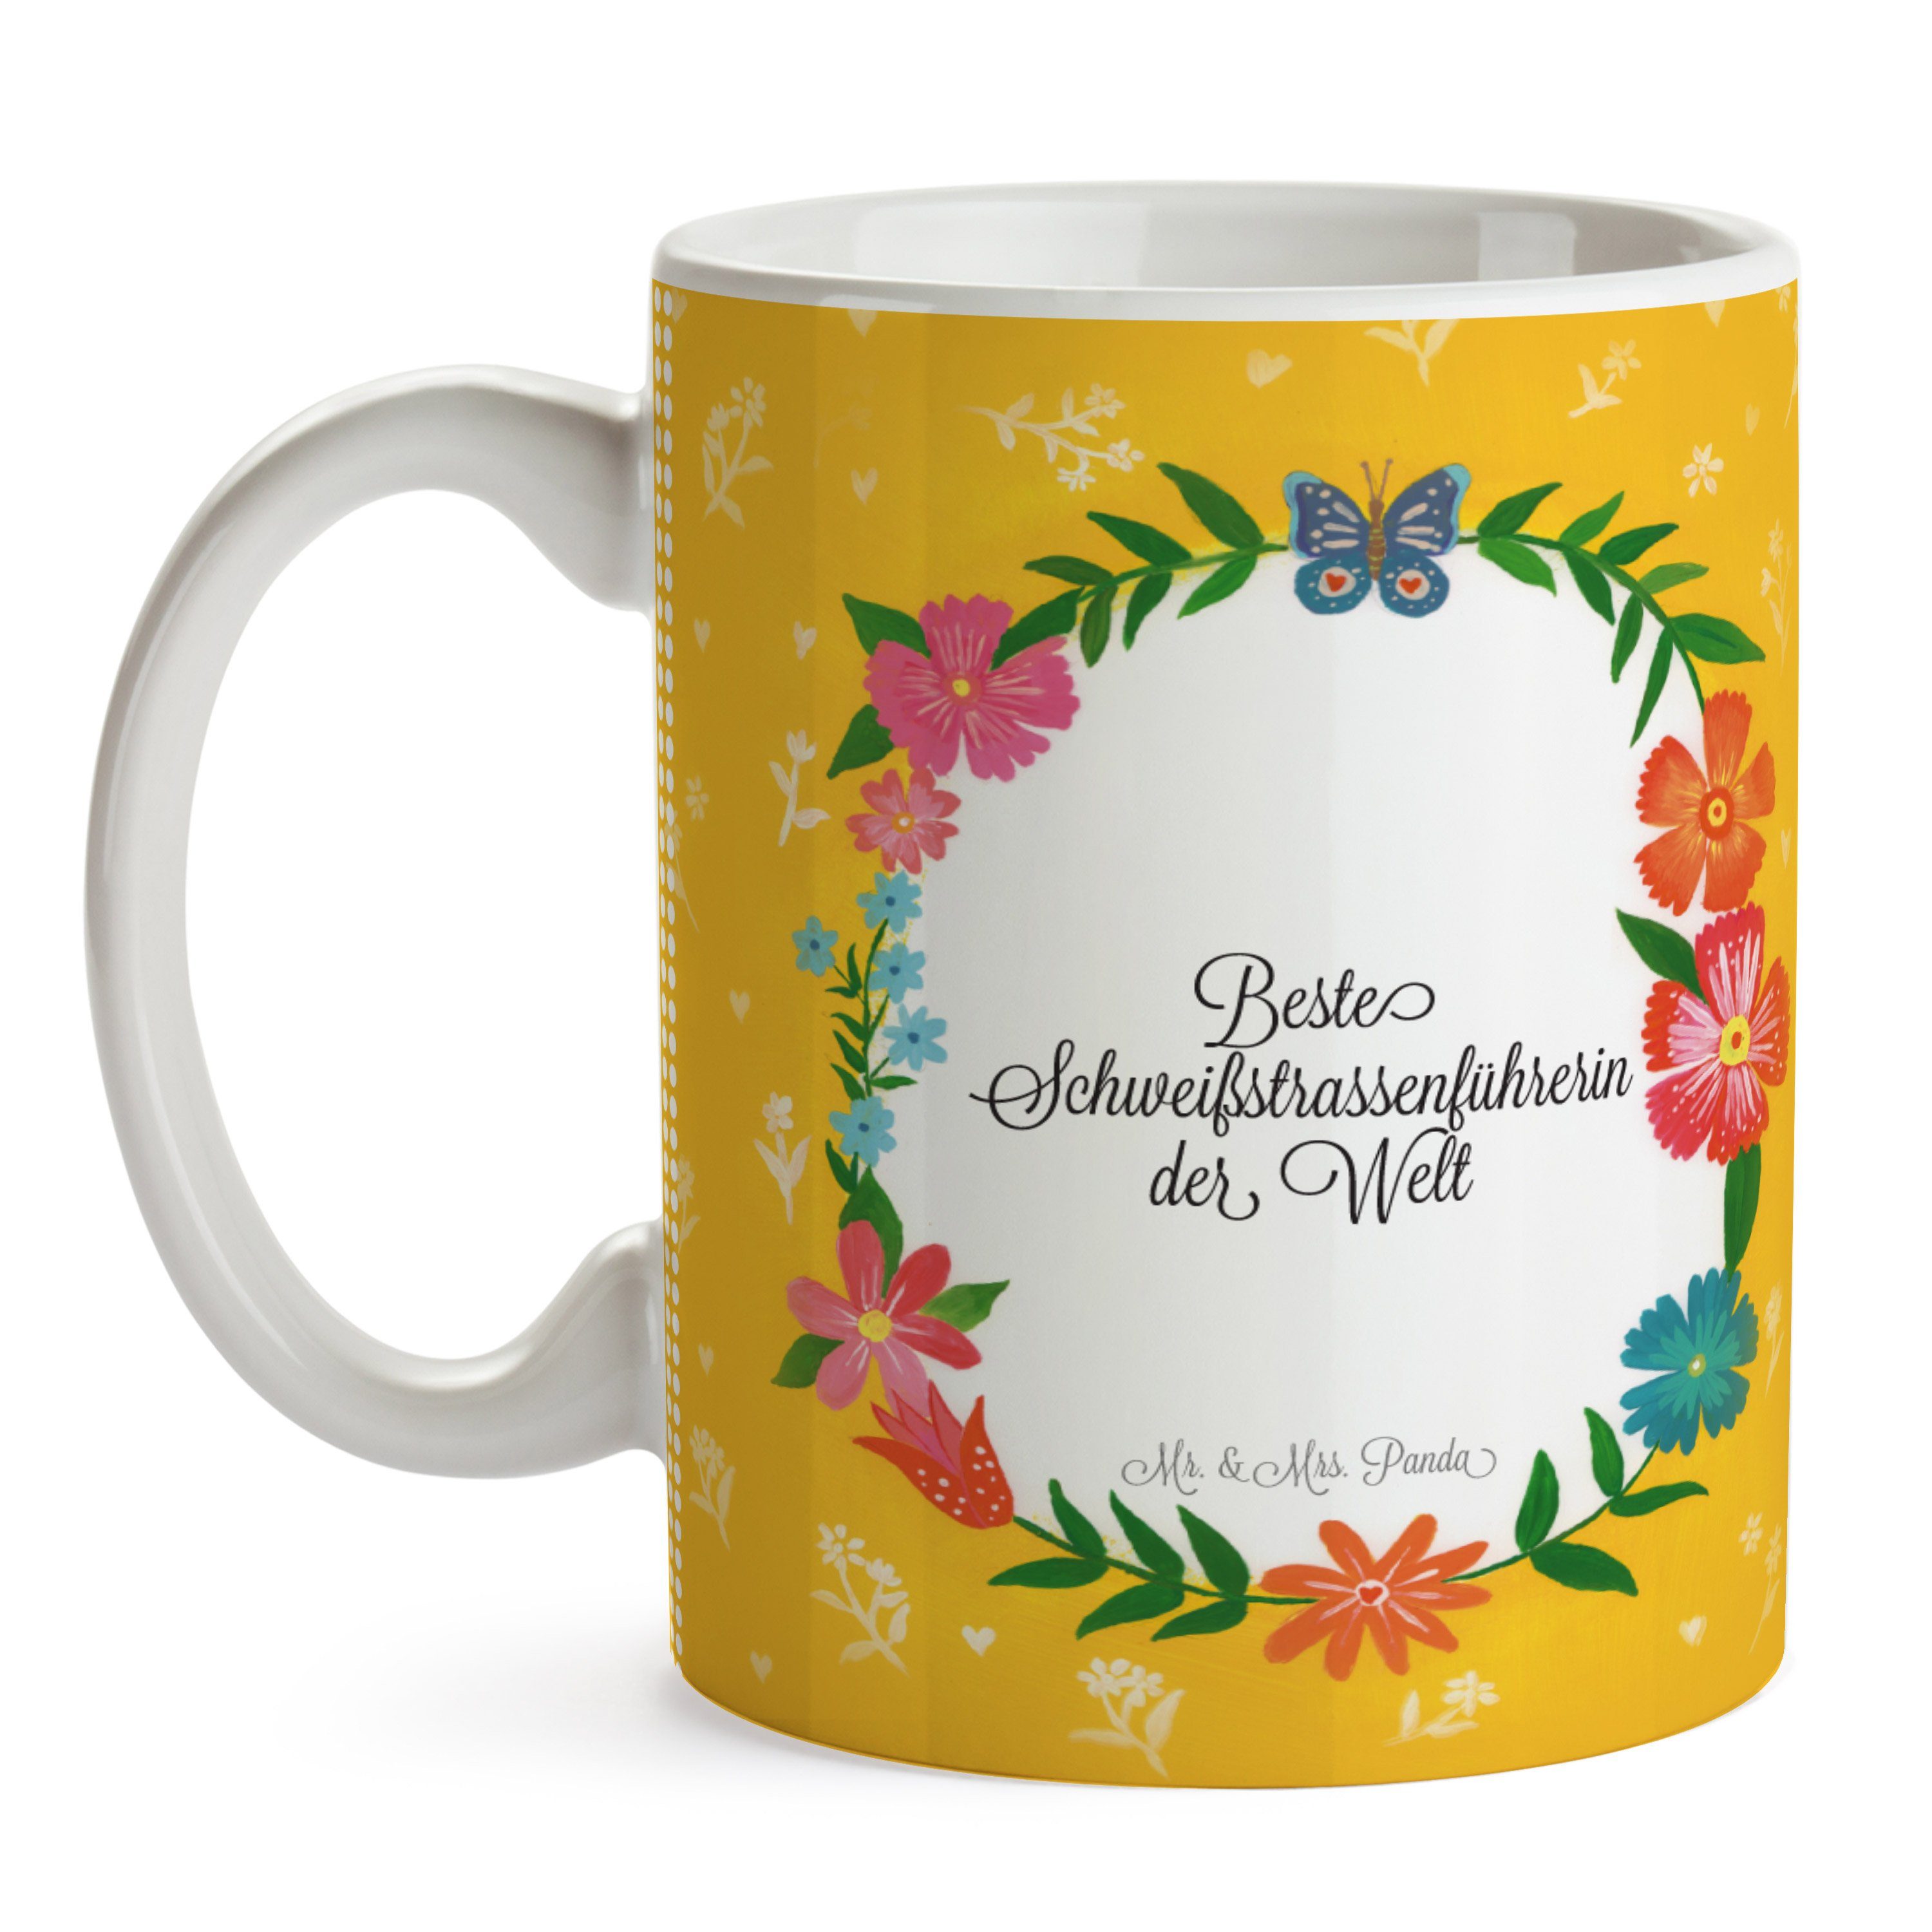 Mr. & Mrs. Panda Tasse Keramik Tasse, Geschenk, Schweißstrassenführerin - Keramiktasse, Gratulation